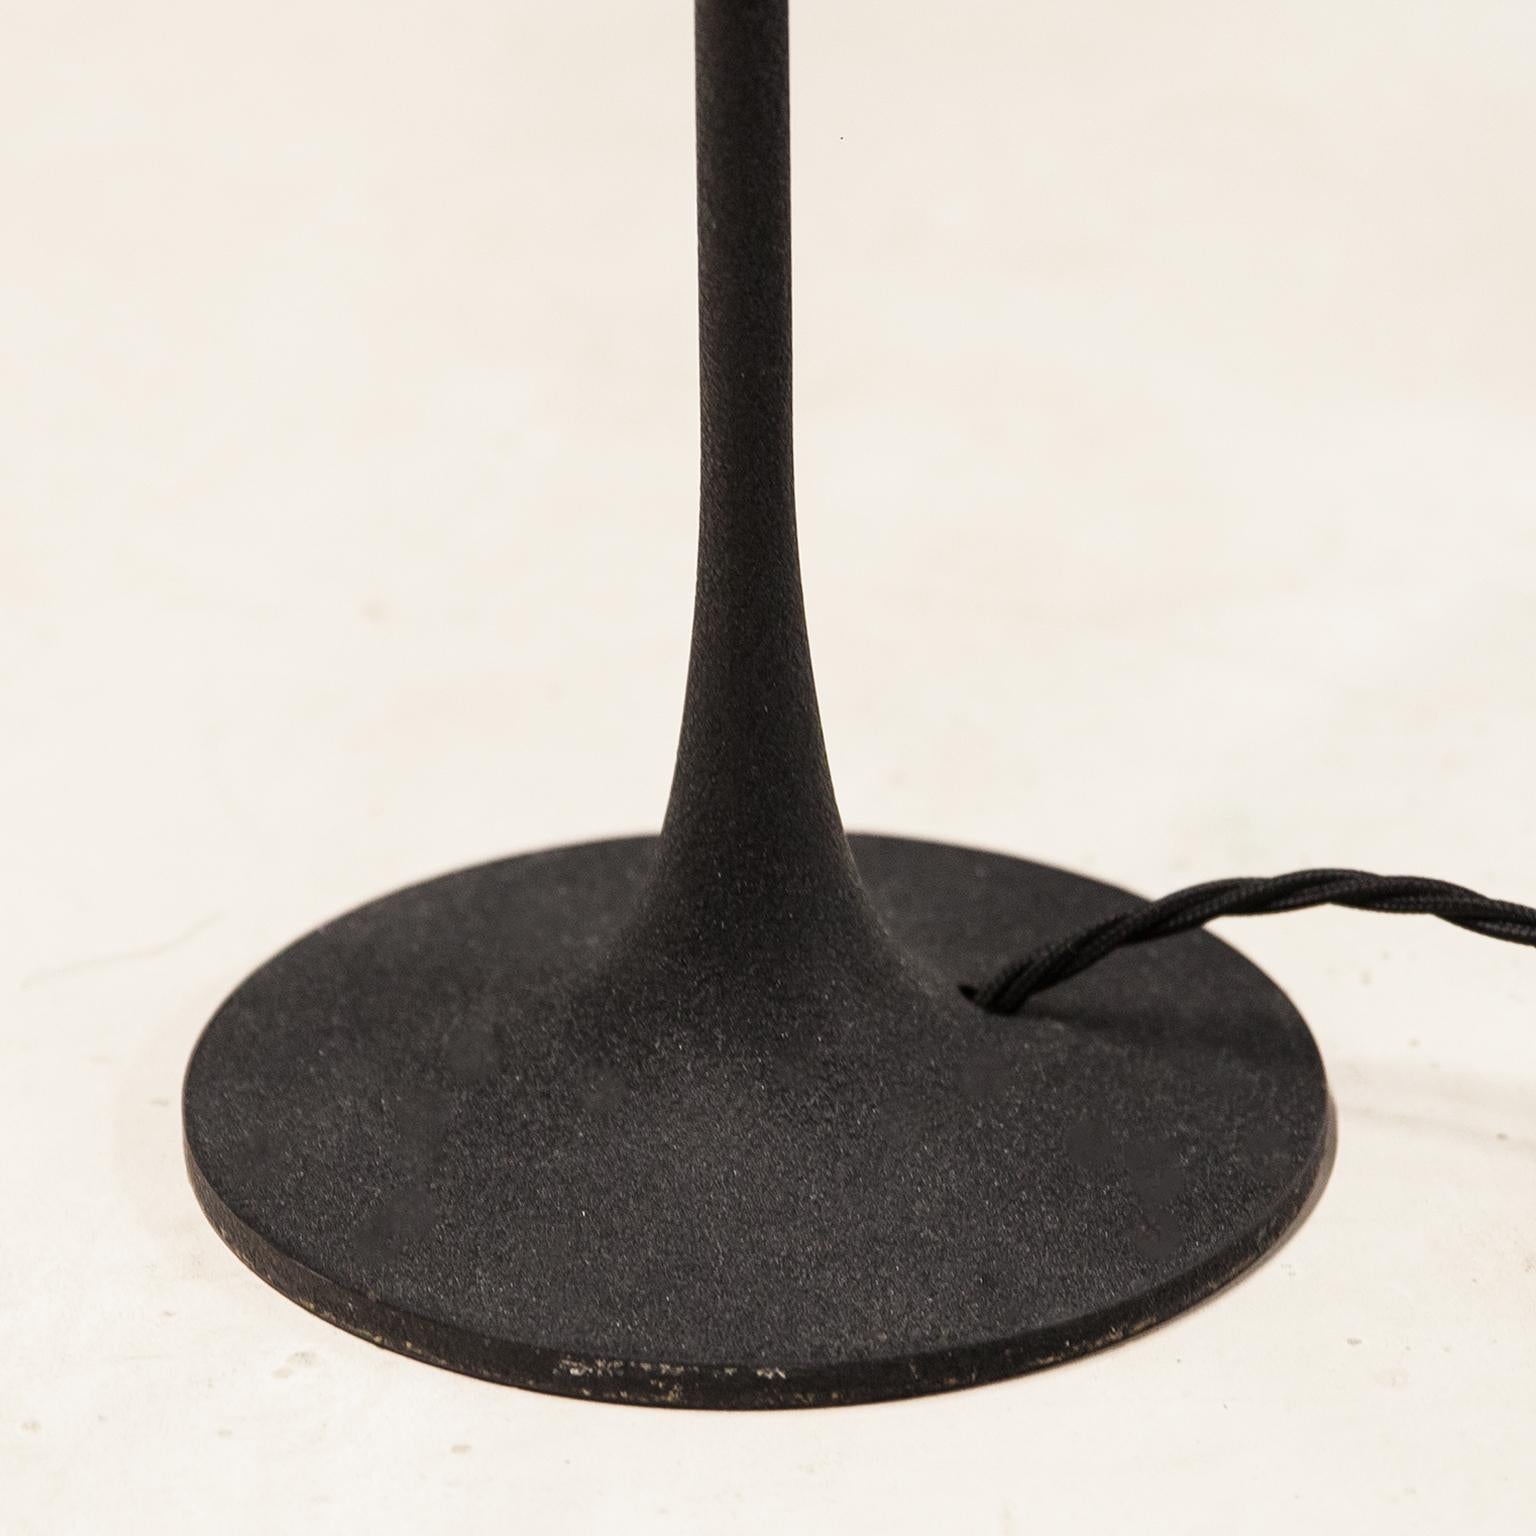 Iron Gino Sarfatti Arteluce Floor Lamp 1086 For Sale